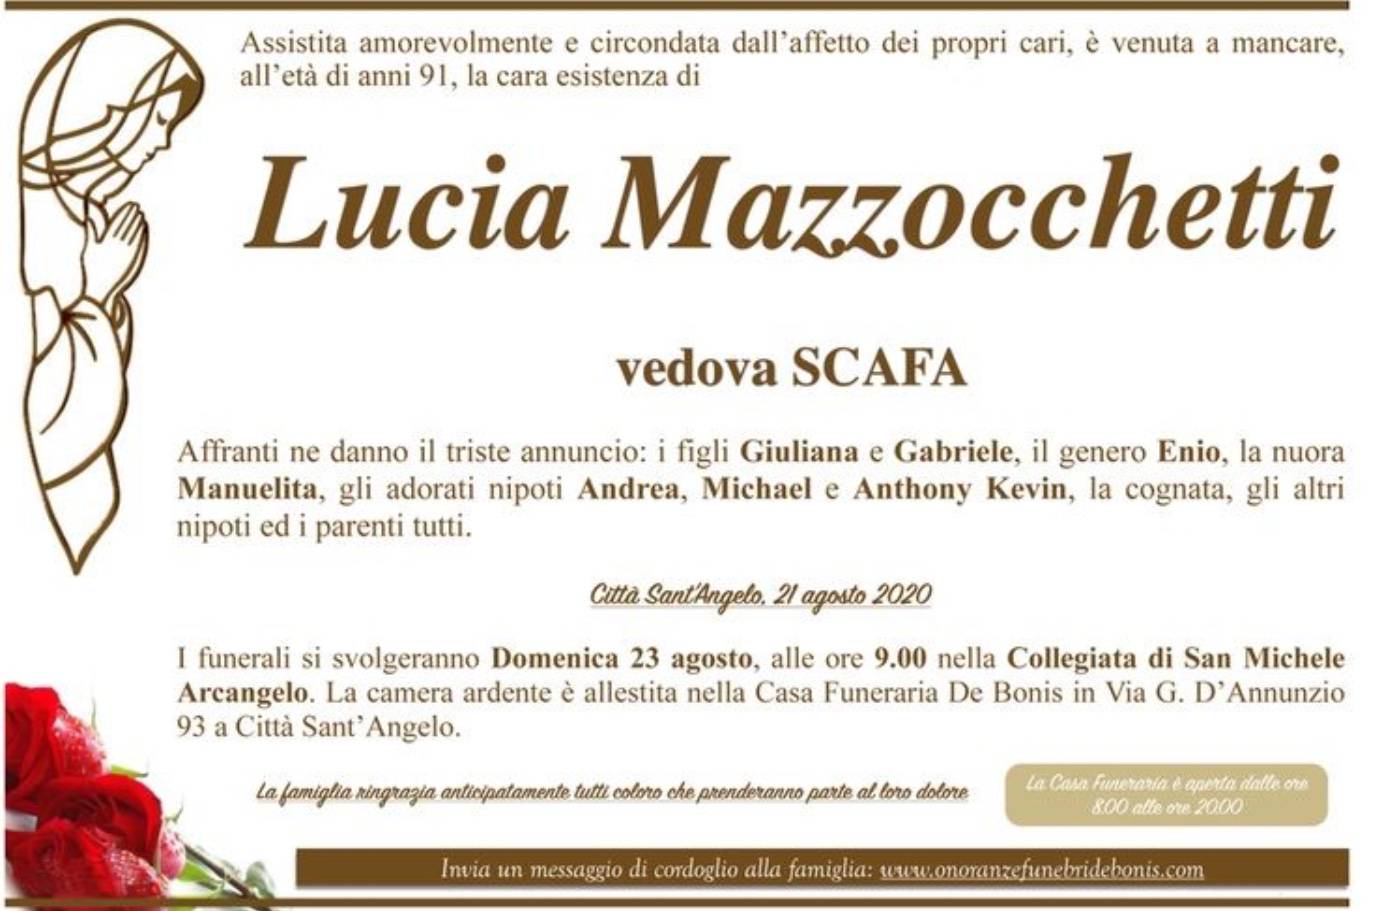 Lucia Mazzocchetti